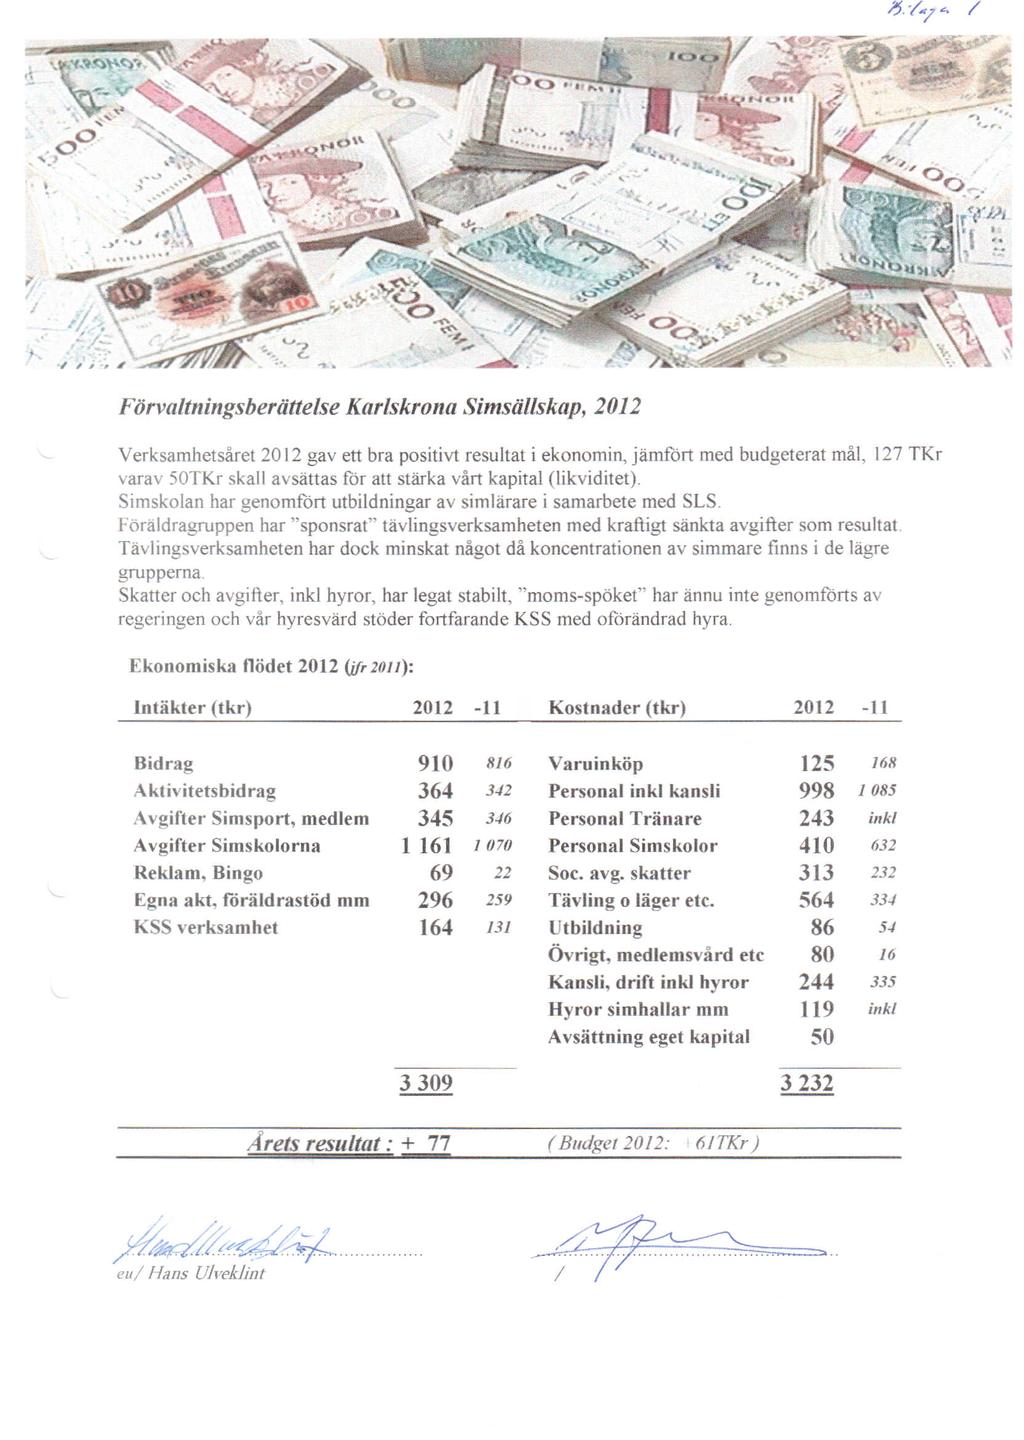 / Förvaltningsberättelse Karlskrona Simsällskap, 2012 Verksamhetsåret 2012 gav ett bra positivt resultat i ekonomin, jämfört med budgeterat mål, 127 TKr varav 50TKr skall avsättas för att stärka vårt